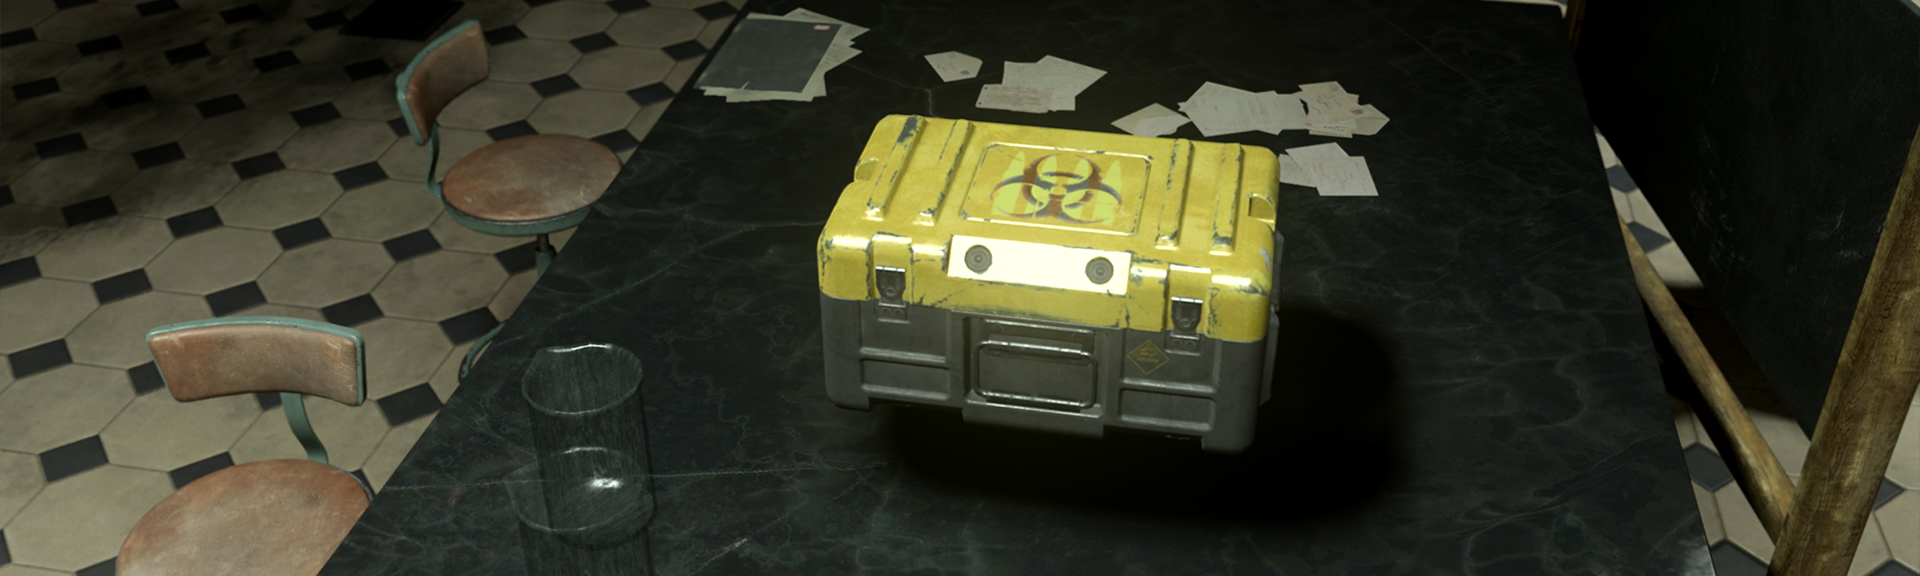 Image of Nebula V ammunition crate